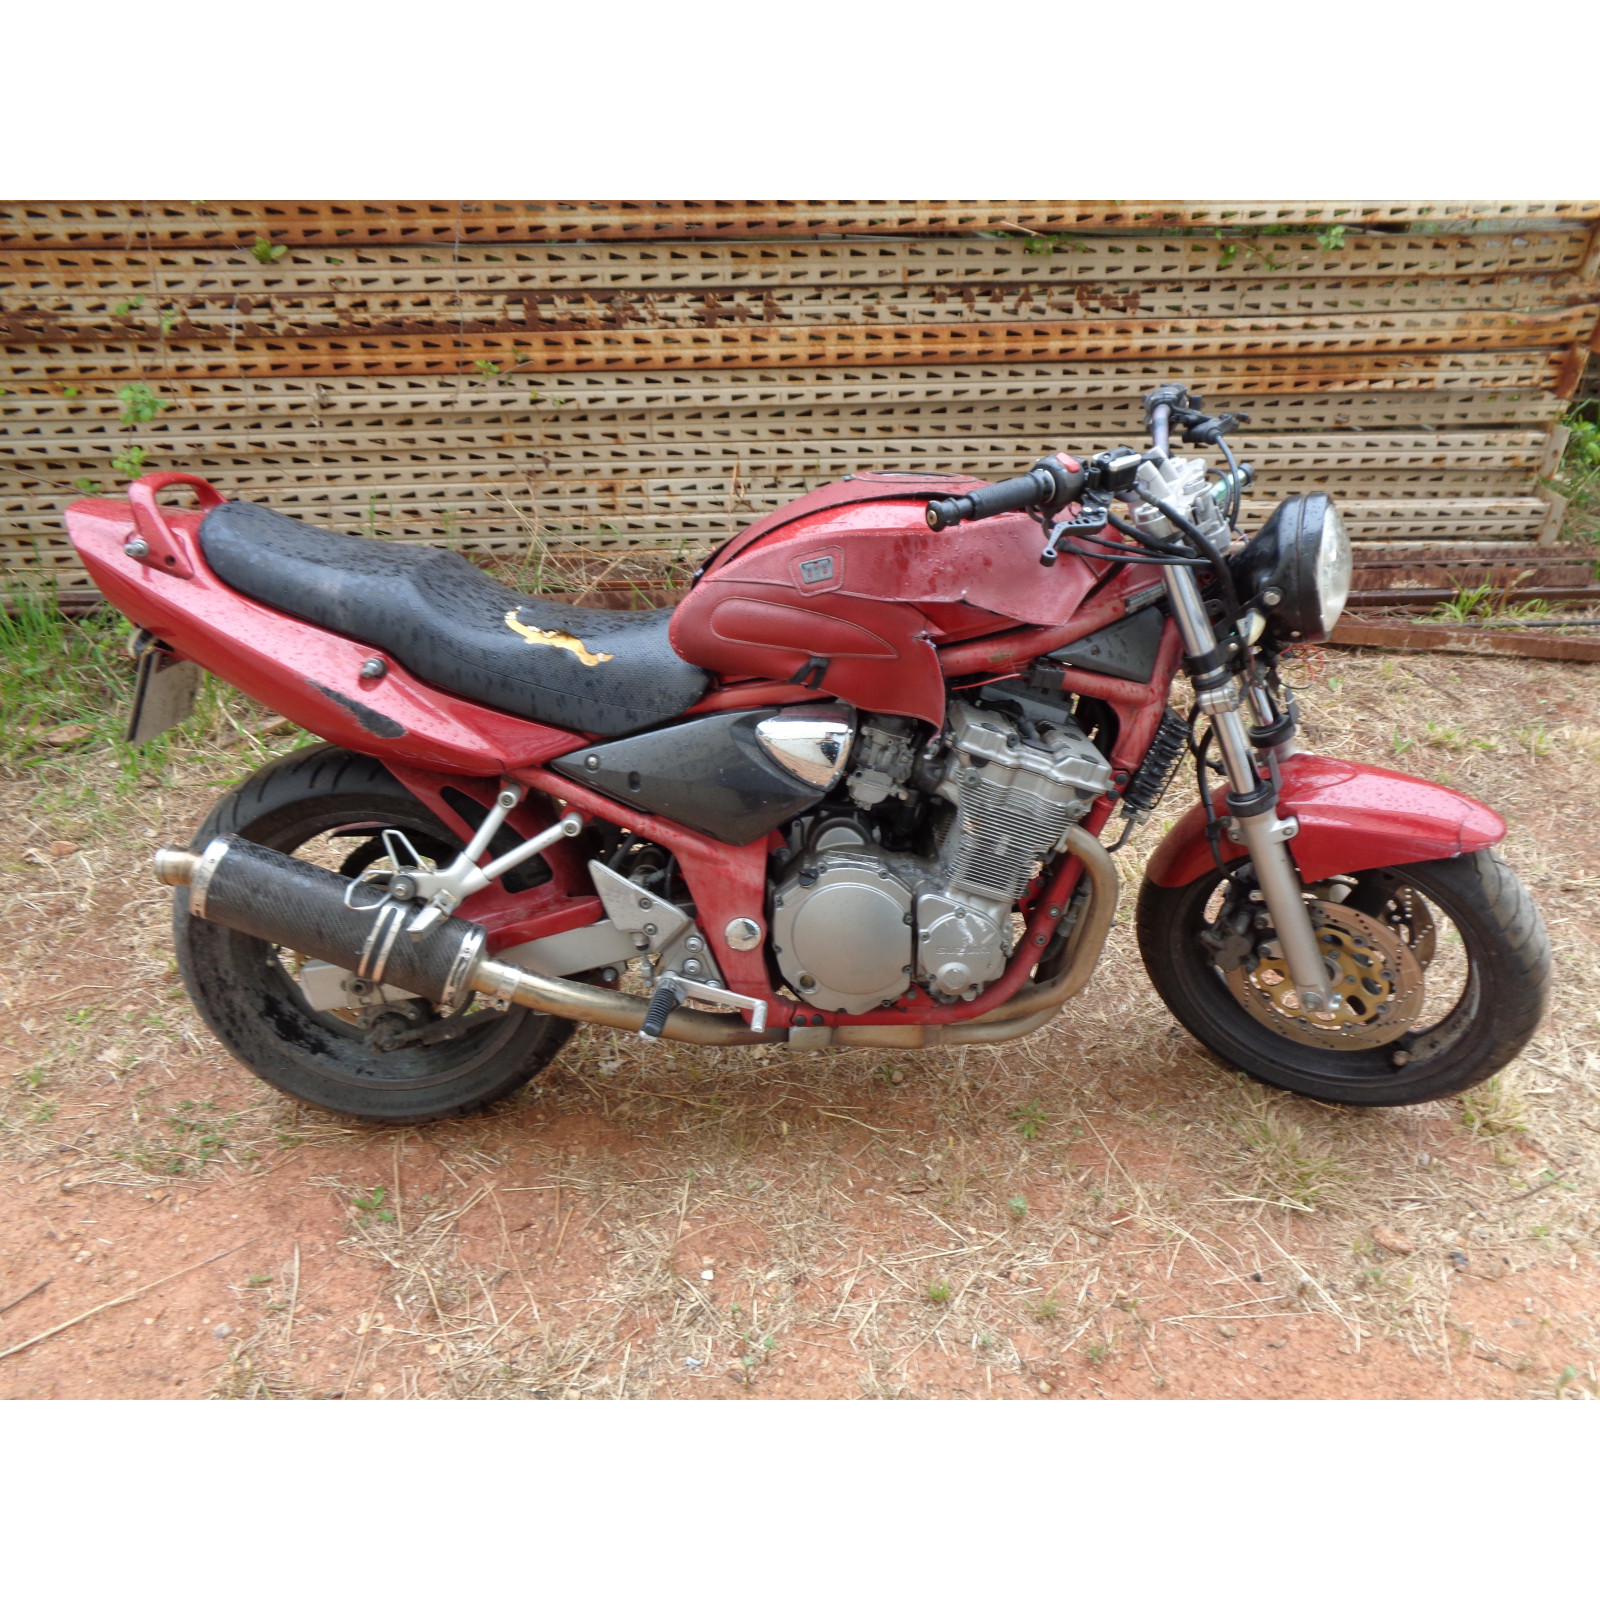 moto suzuki gsf 600 bandit js1a8 2000 - 04 pour demande de pieces occasion